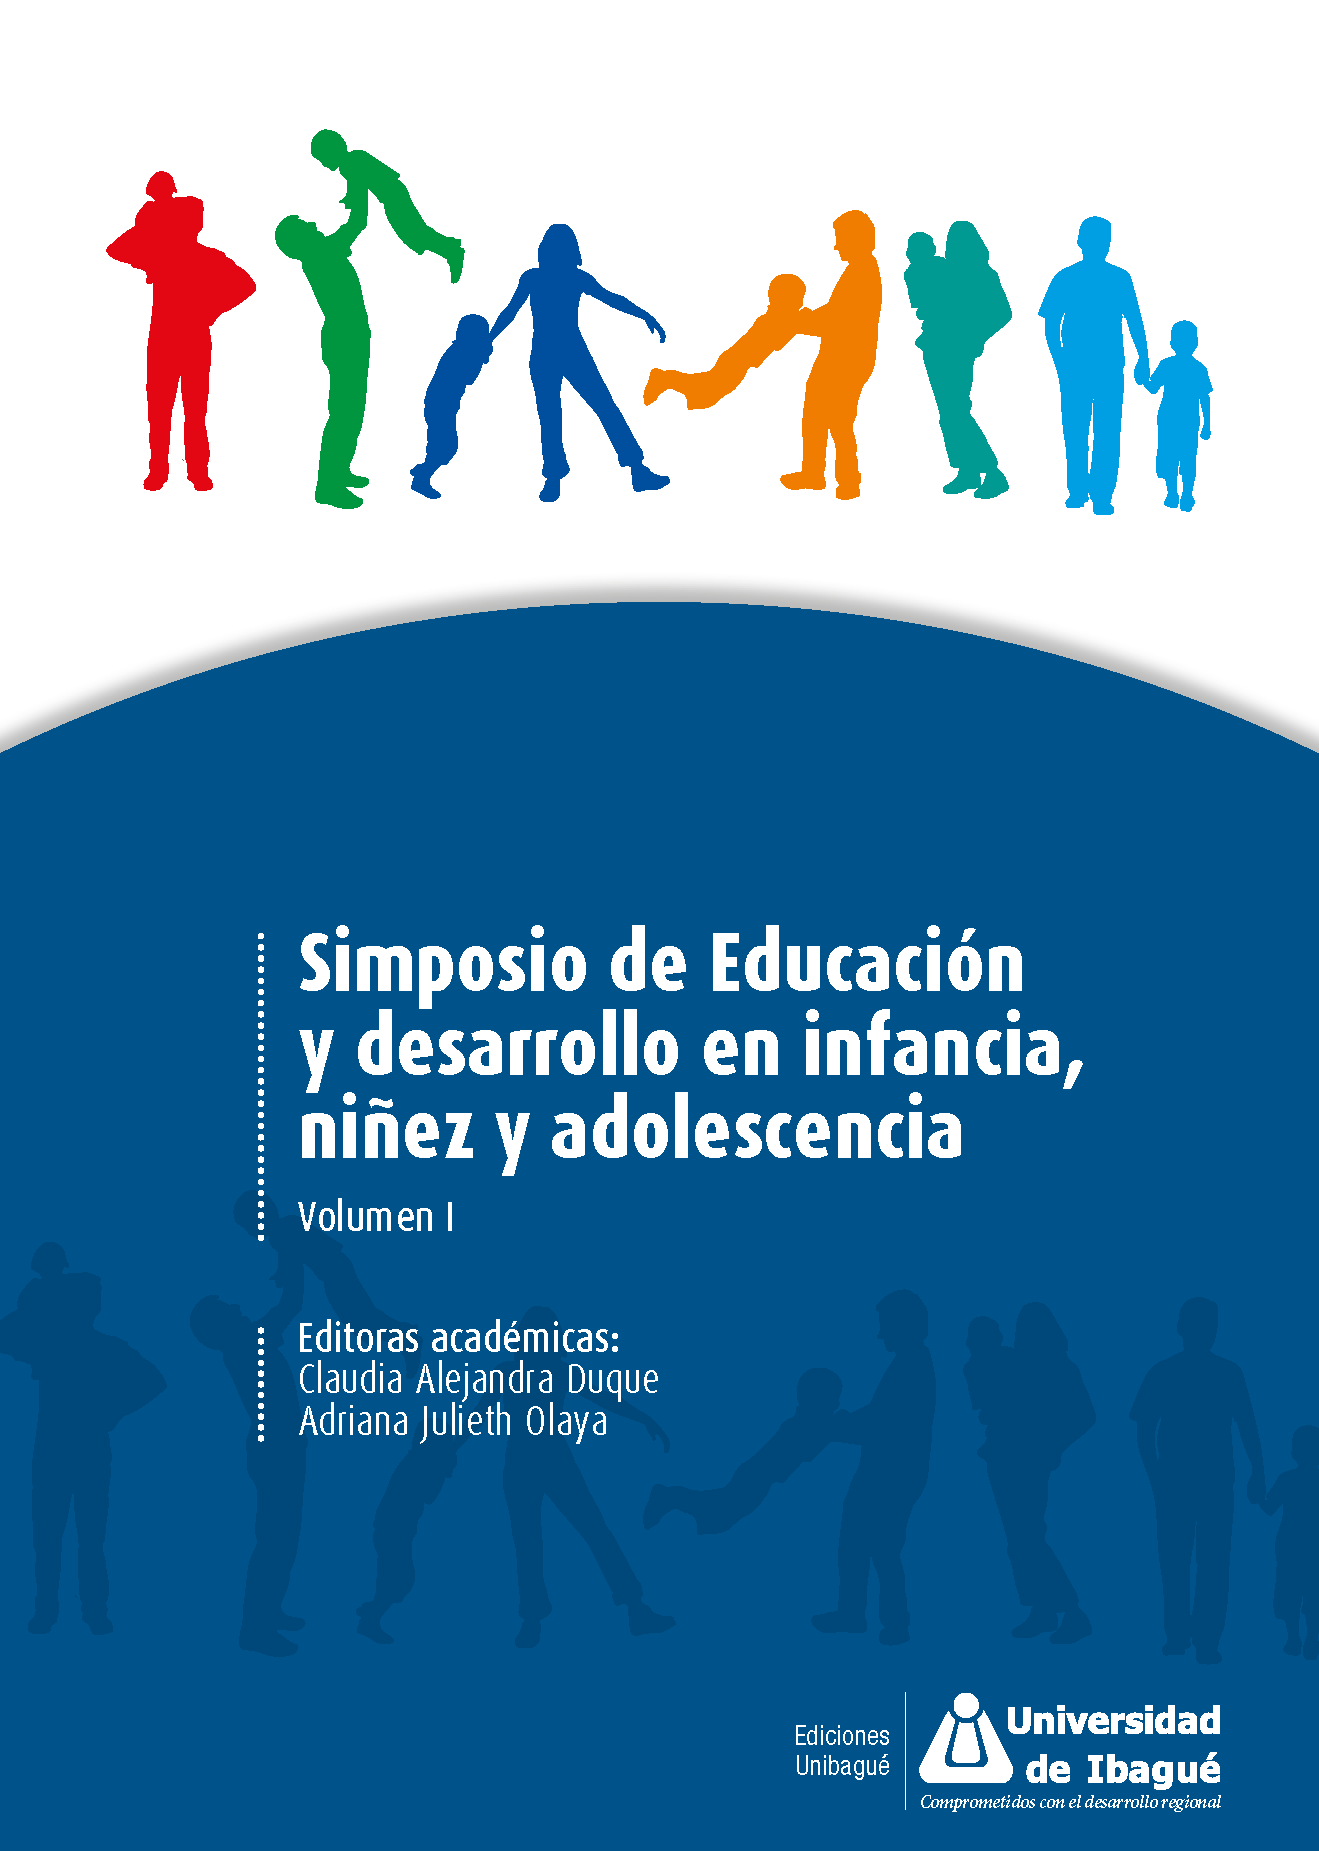 Cover of Simposio de Educacióny desarrollo en infancia,niñez y adolescencia